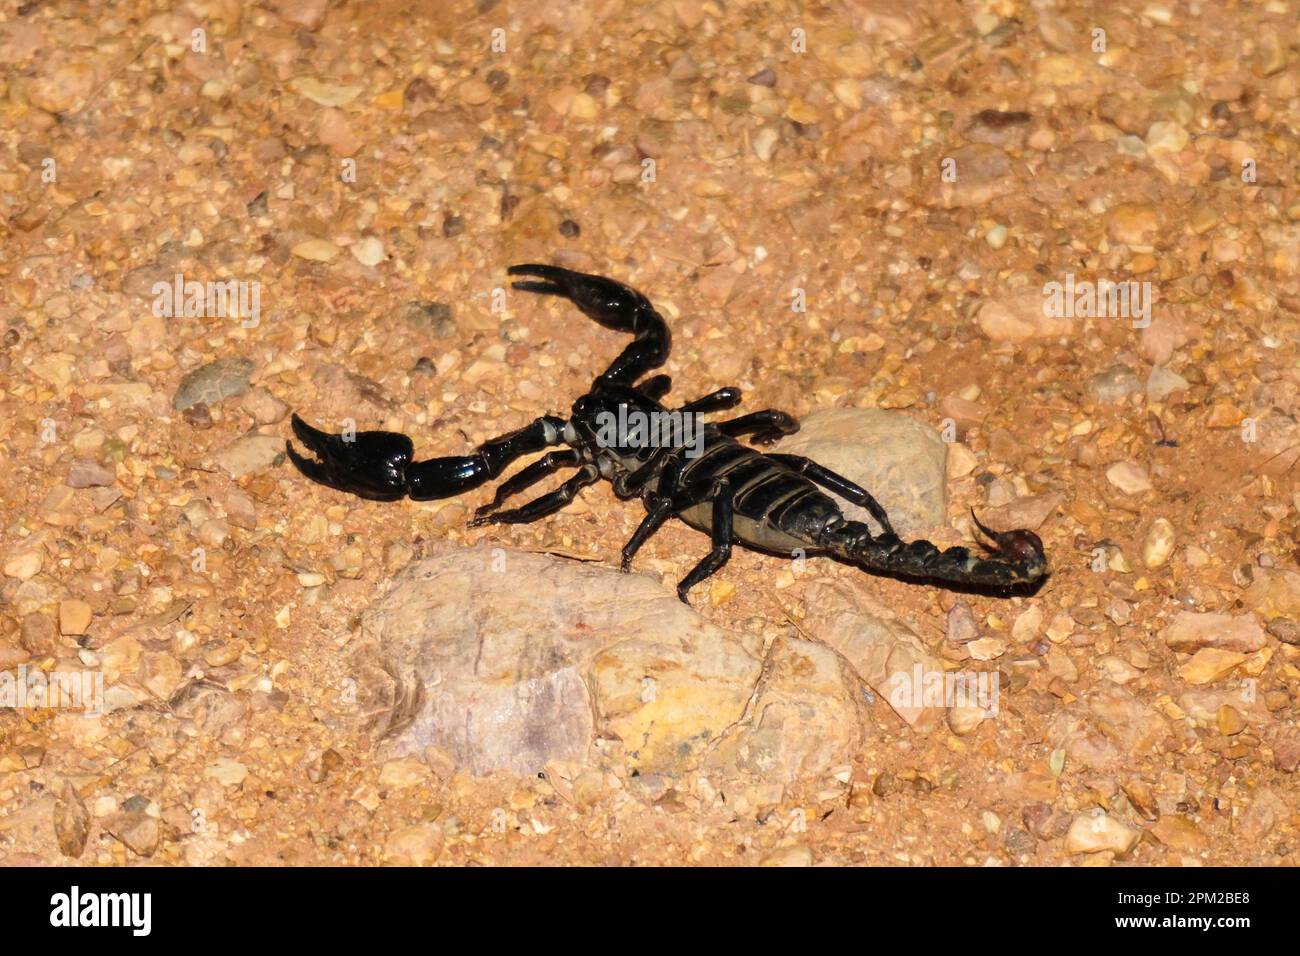 Scorpion de la forêt noire ou hetomelomelrus laoticus - une espèce d'arachnide intimidante capturée à la caméra Banque D'Images